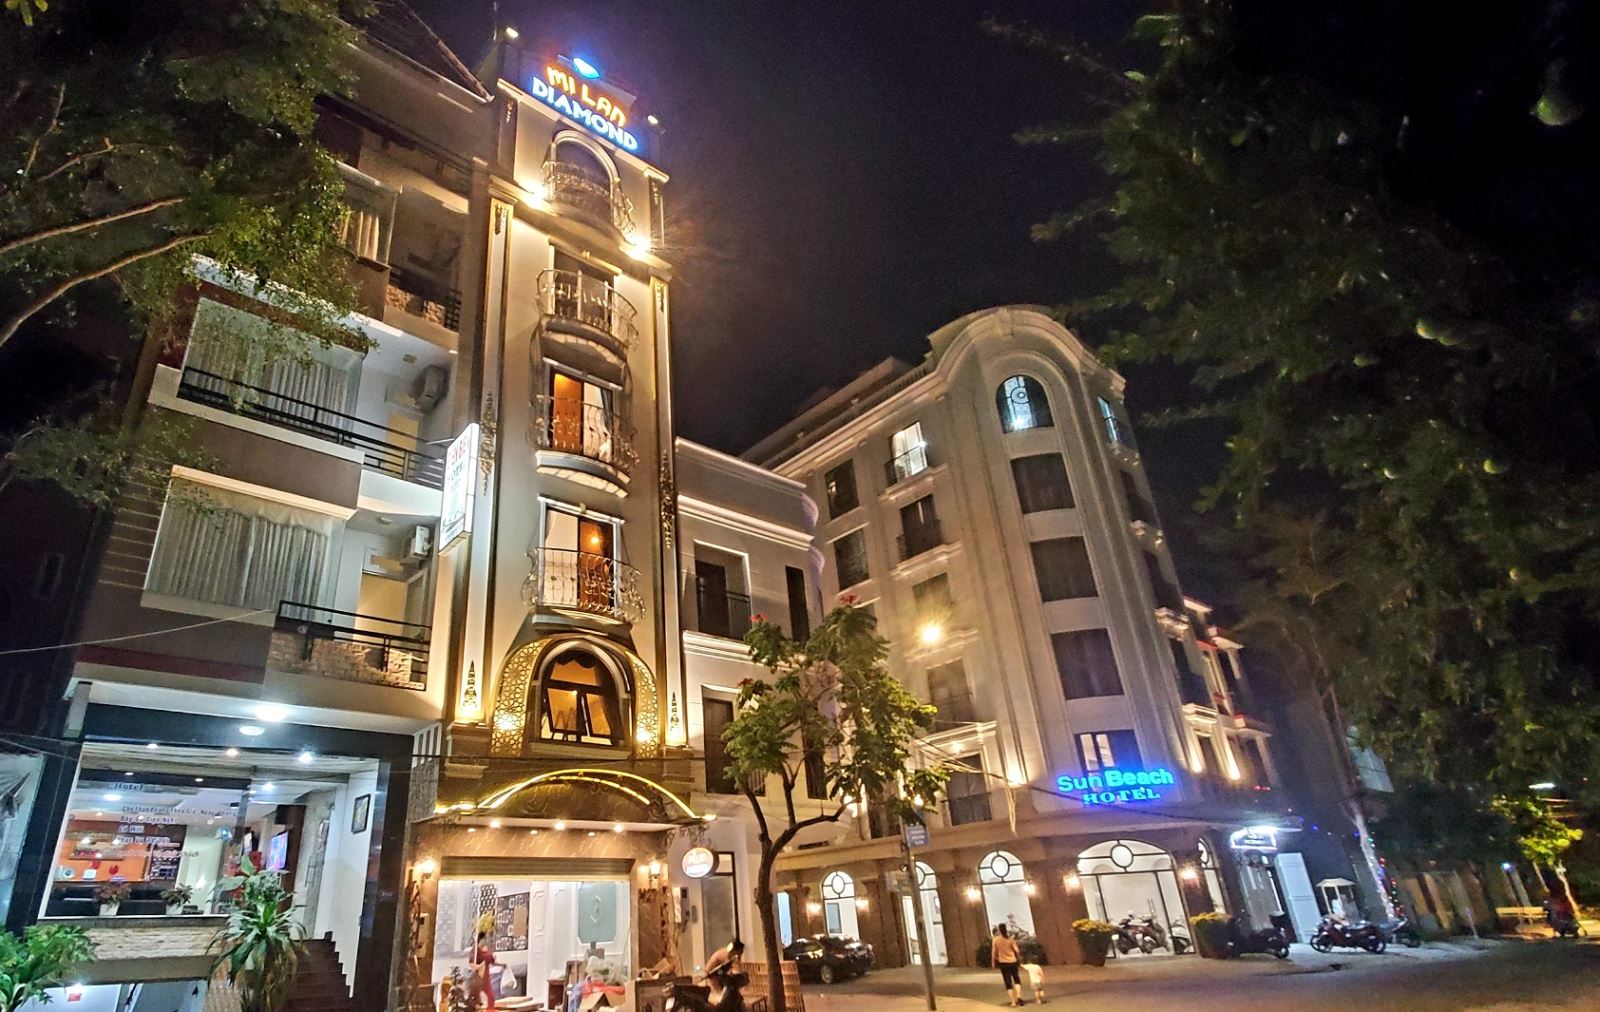 Mi Lan Diamond Hotel